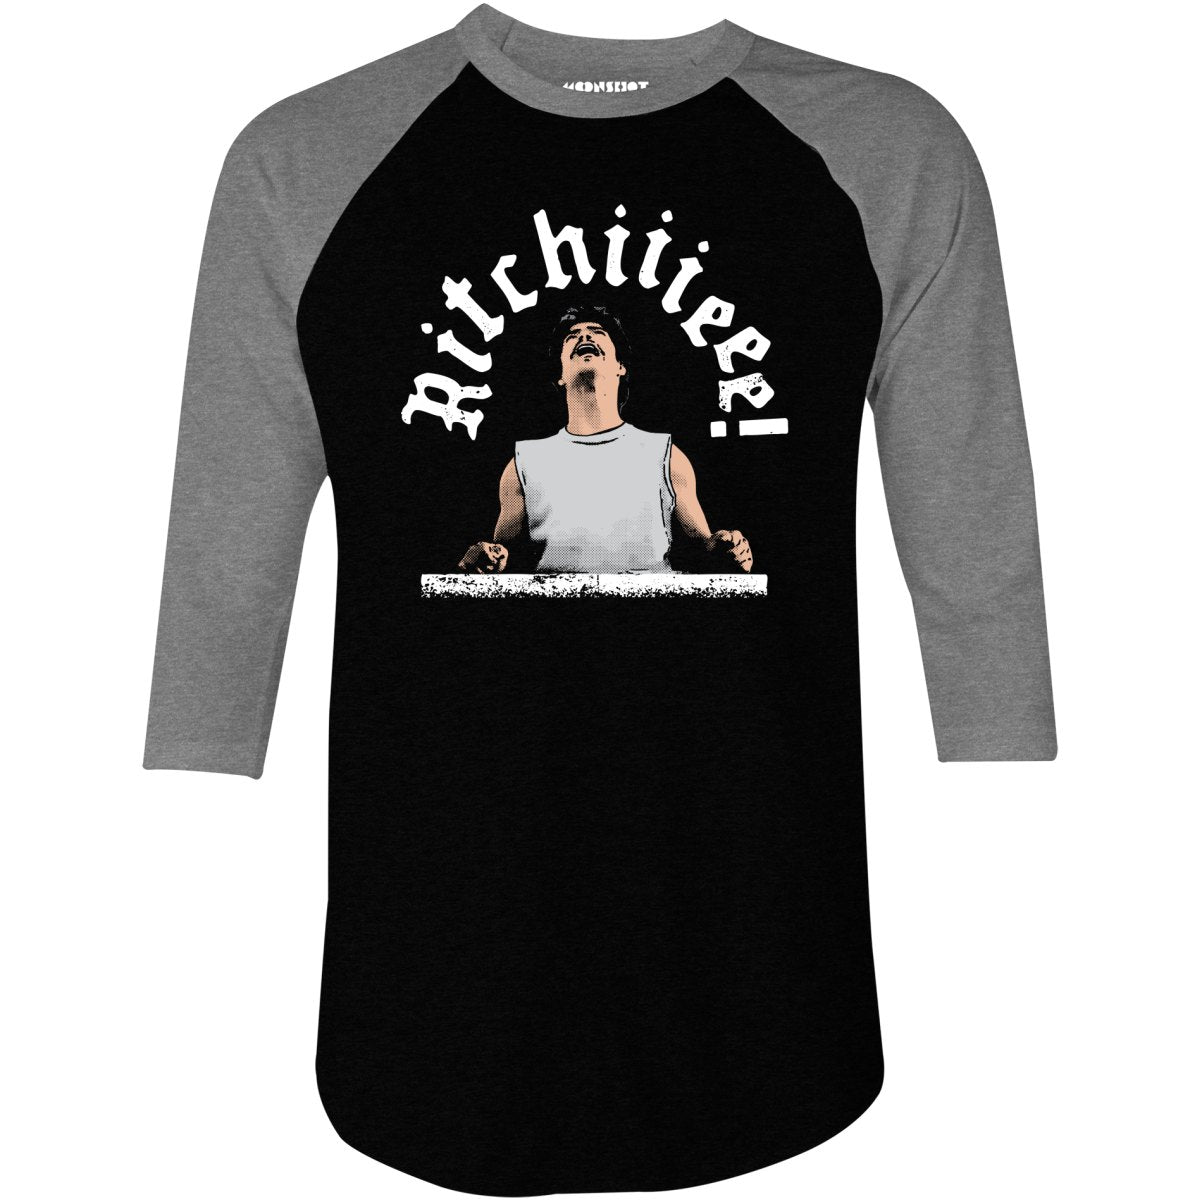 Ritchiiieee! - 3/4 Sleeve Raglan T-Shirt